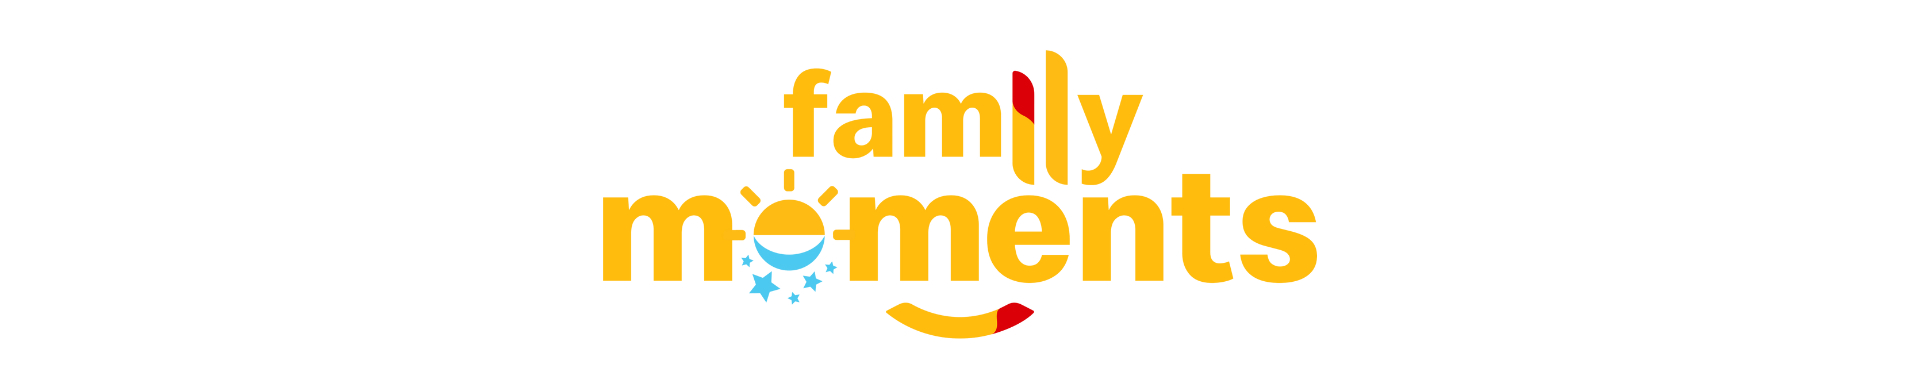 family_moments_logo